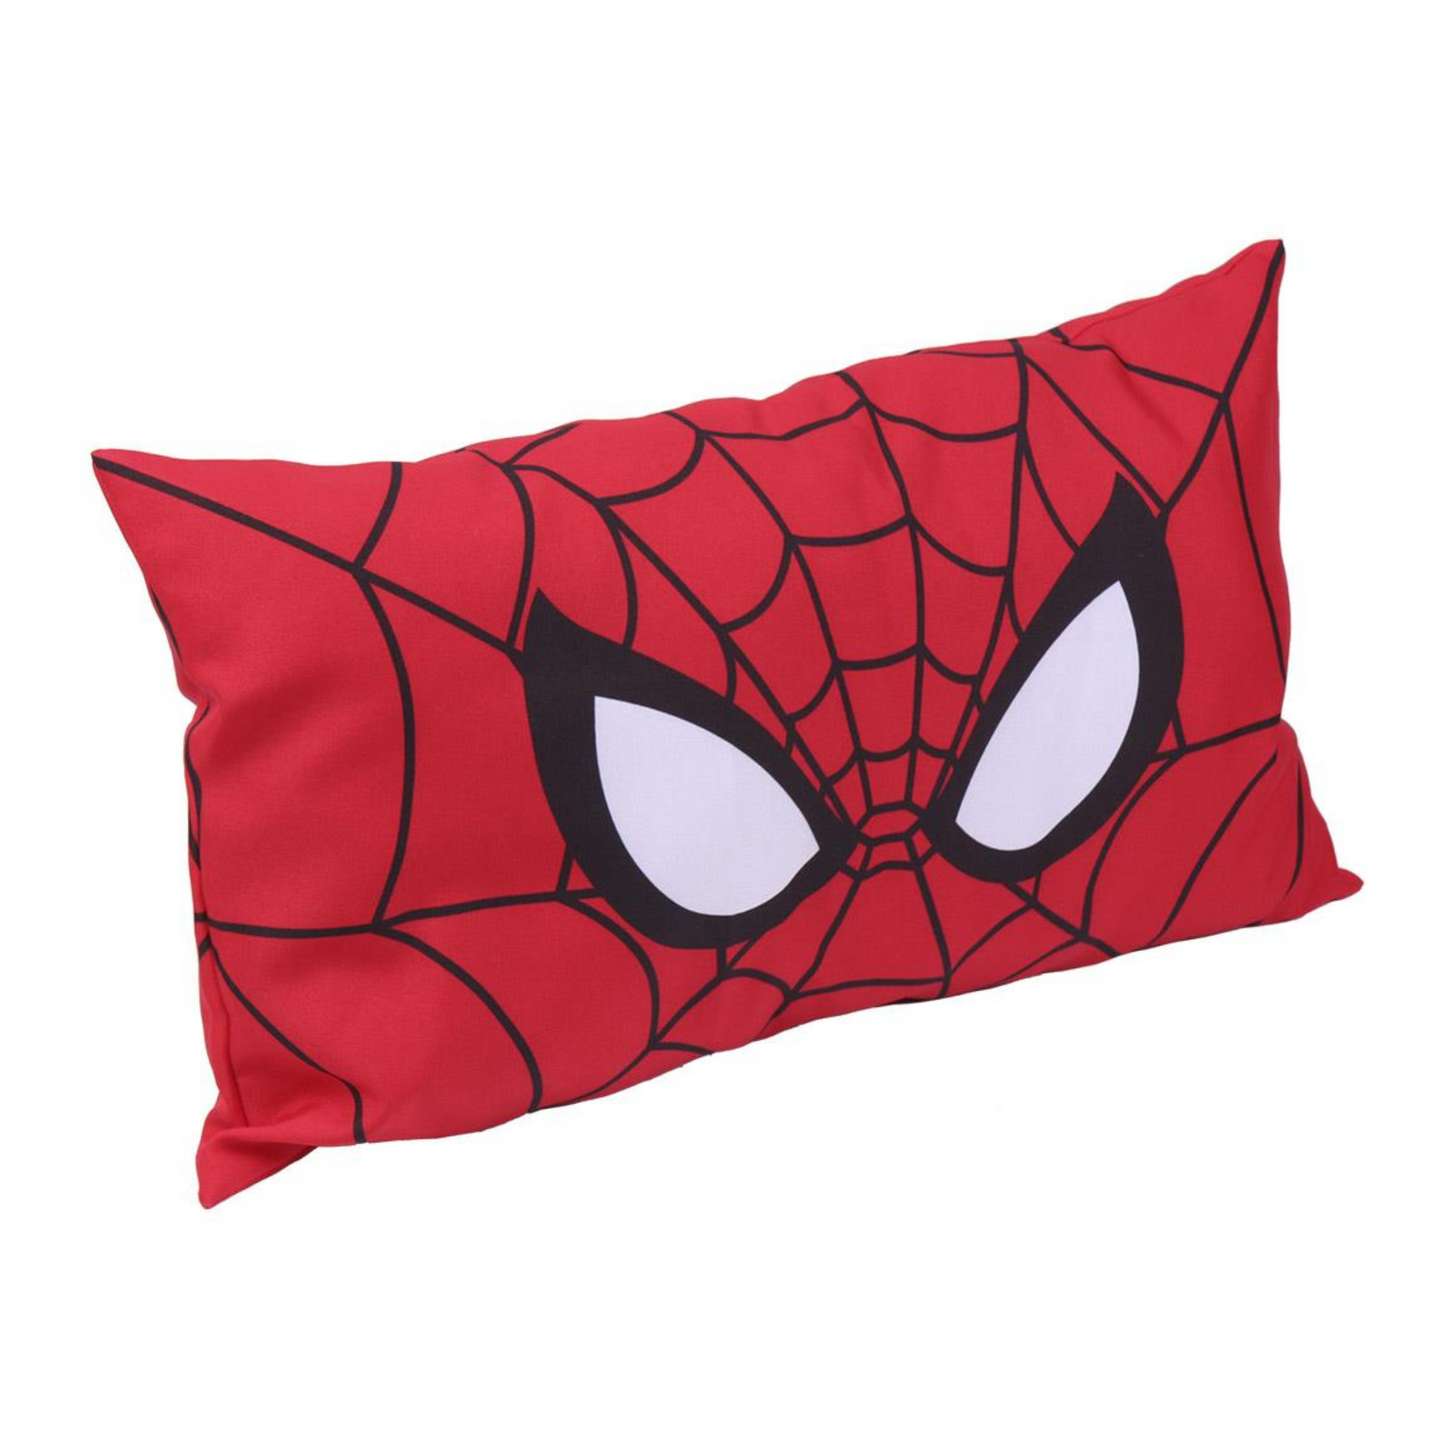 Spider-Man Dog Bed